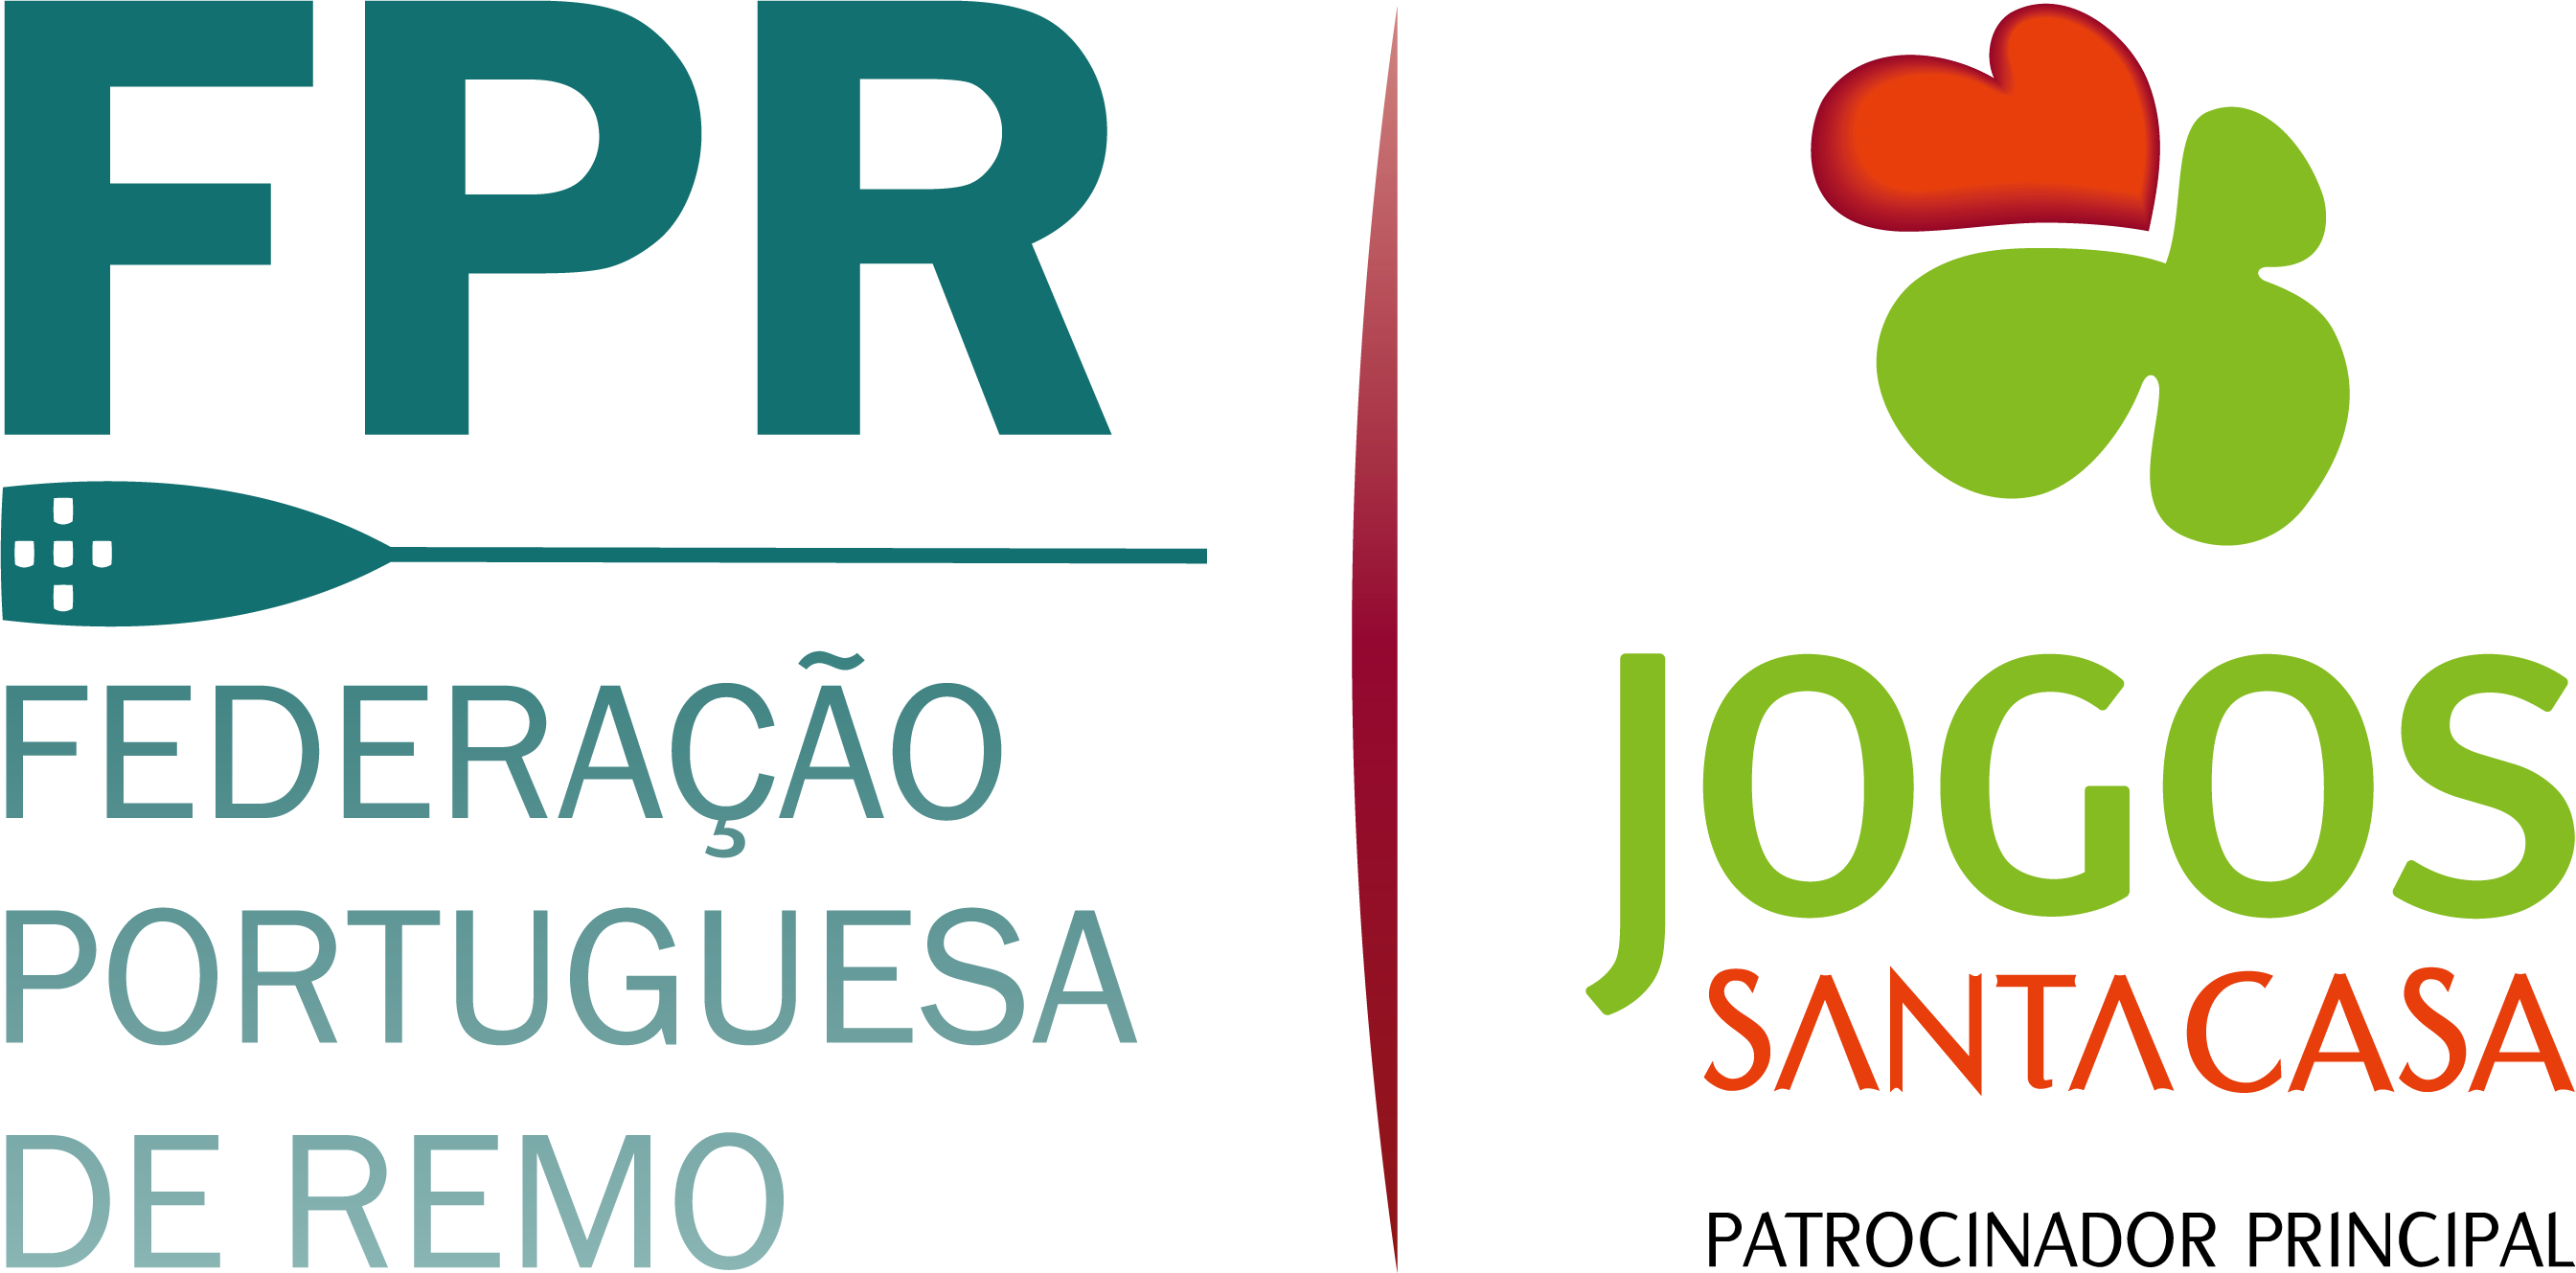 Federação Portuguesa de Remo